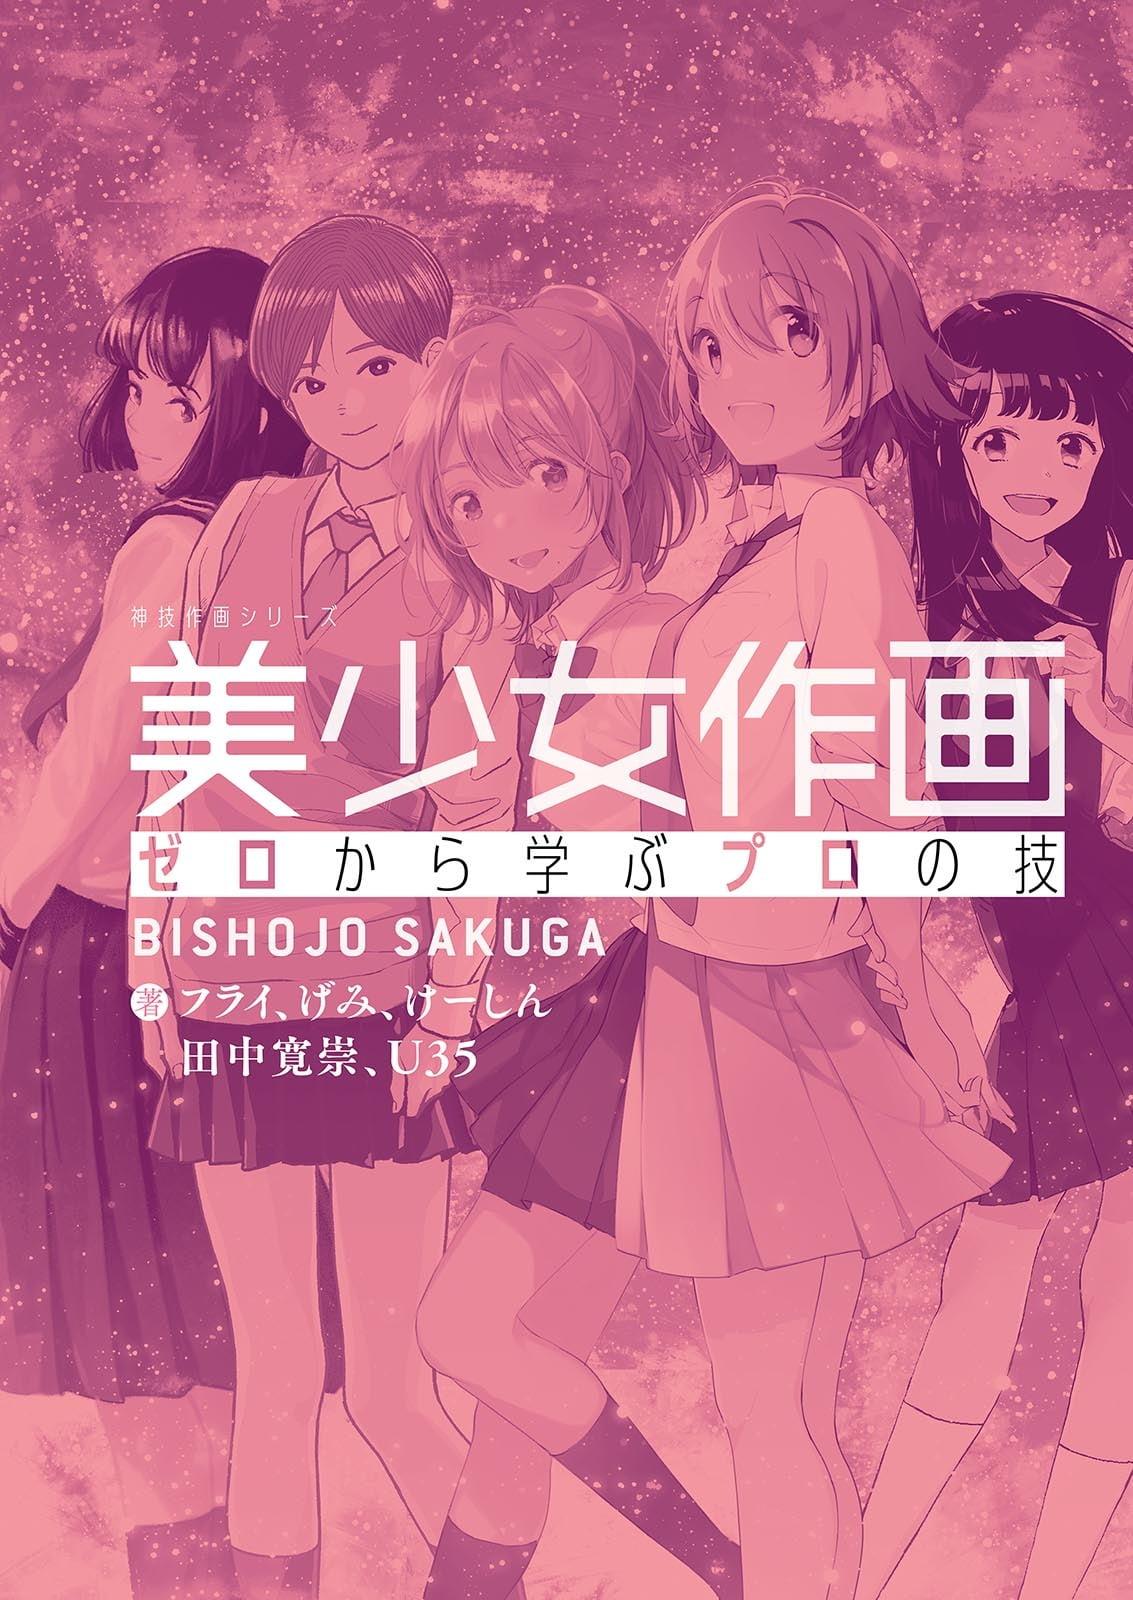 Bishoujo Sakuga Zero Kara Manabu Puro No Waza (Japanese Edition)